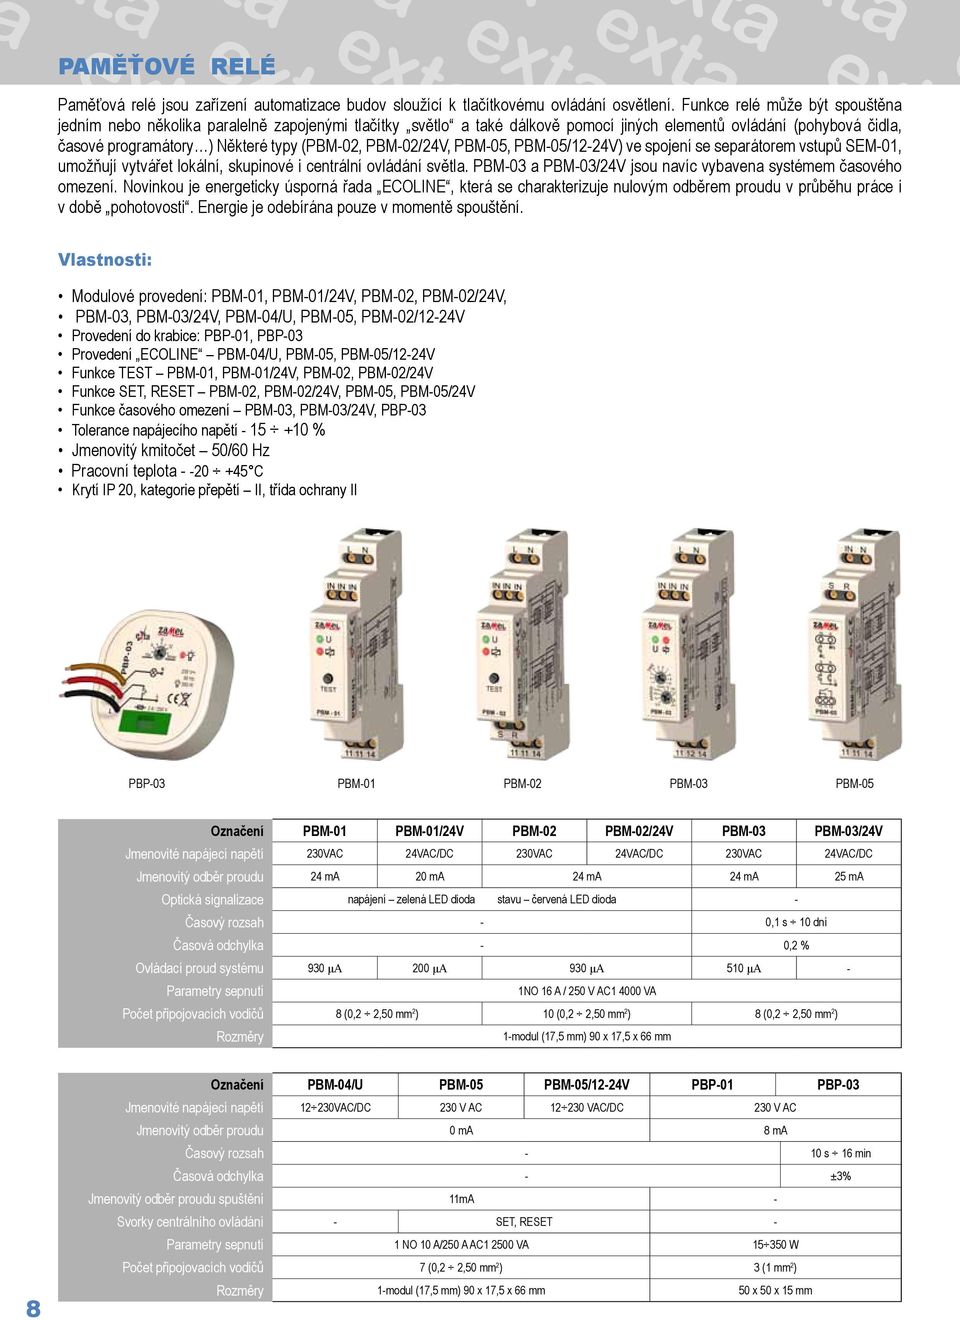 PBM-02/24V, PBM-05, PBM-05/12-24V) ve spojení se separátorem vstupů SEM-01, umožňují vytvářet lokální, skupinové i centrální ovládání světla.